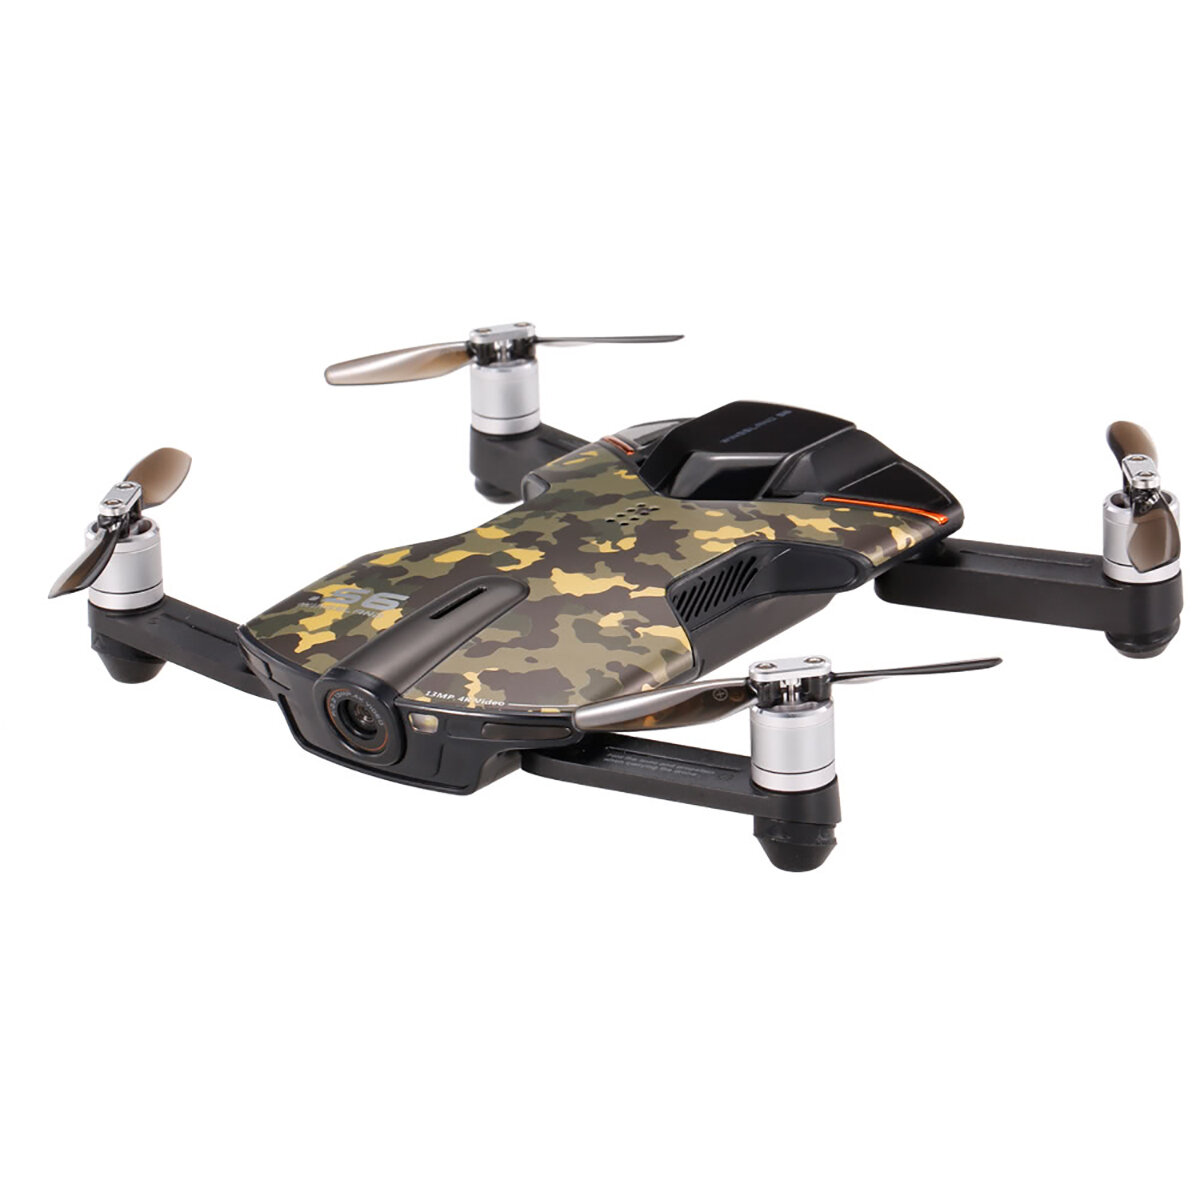 wingsland drone